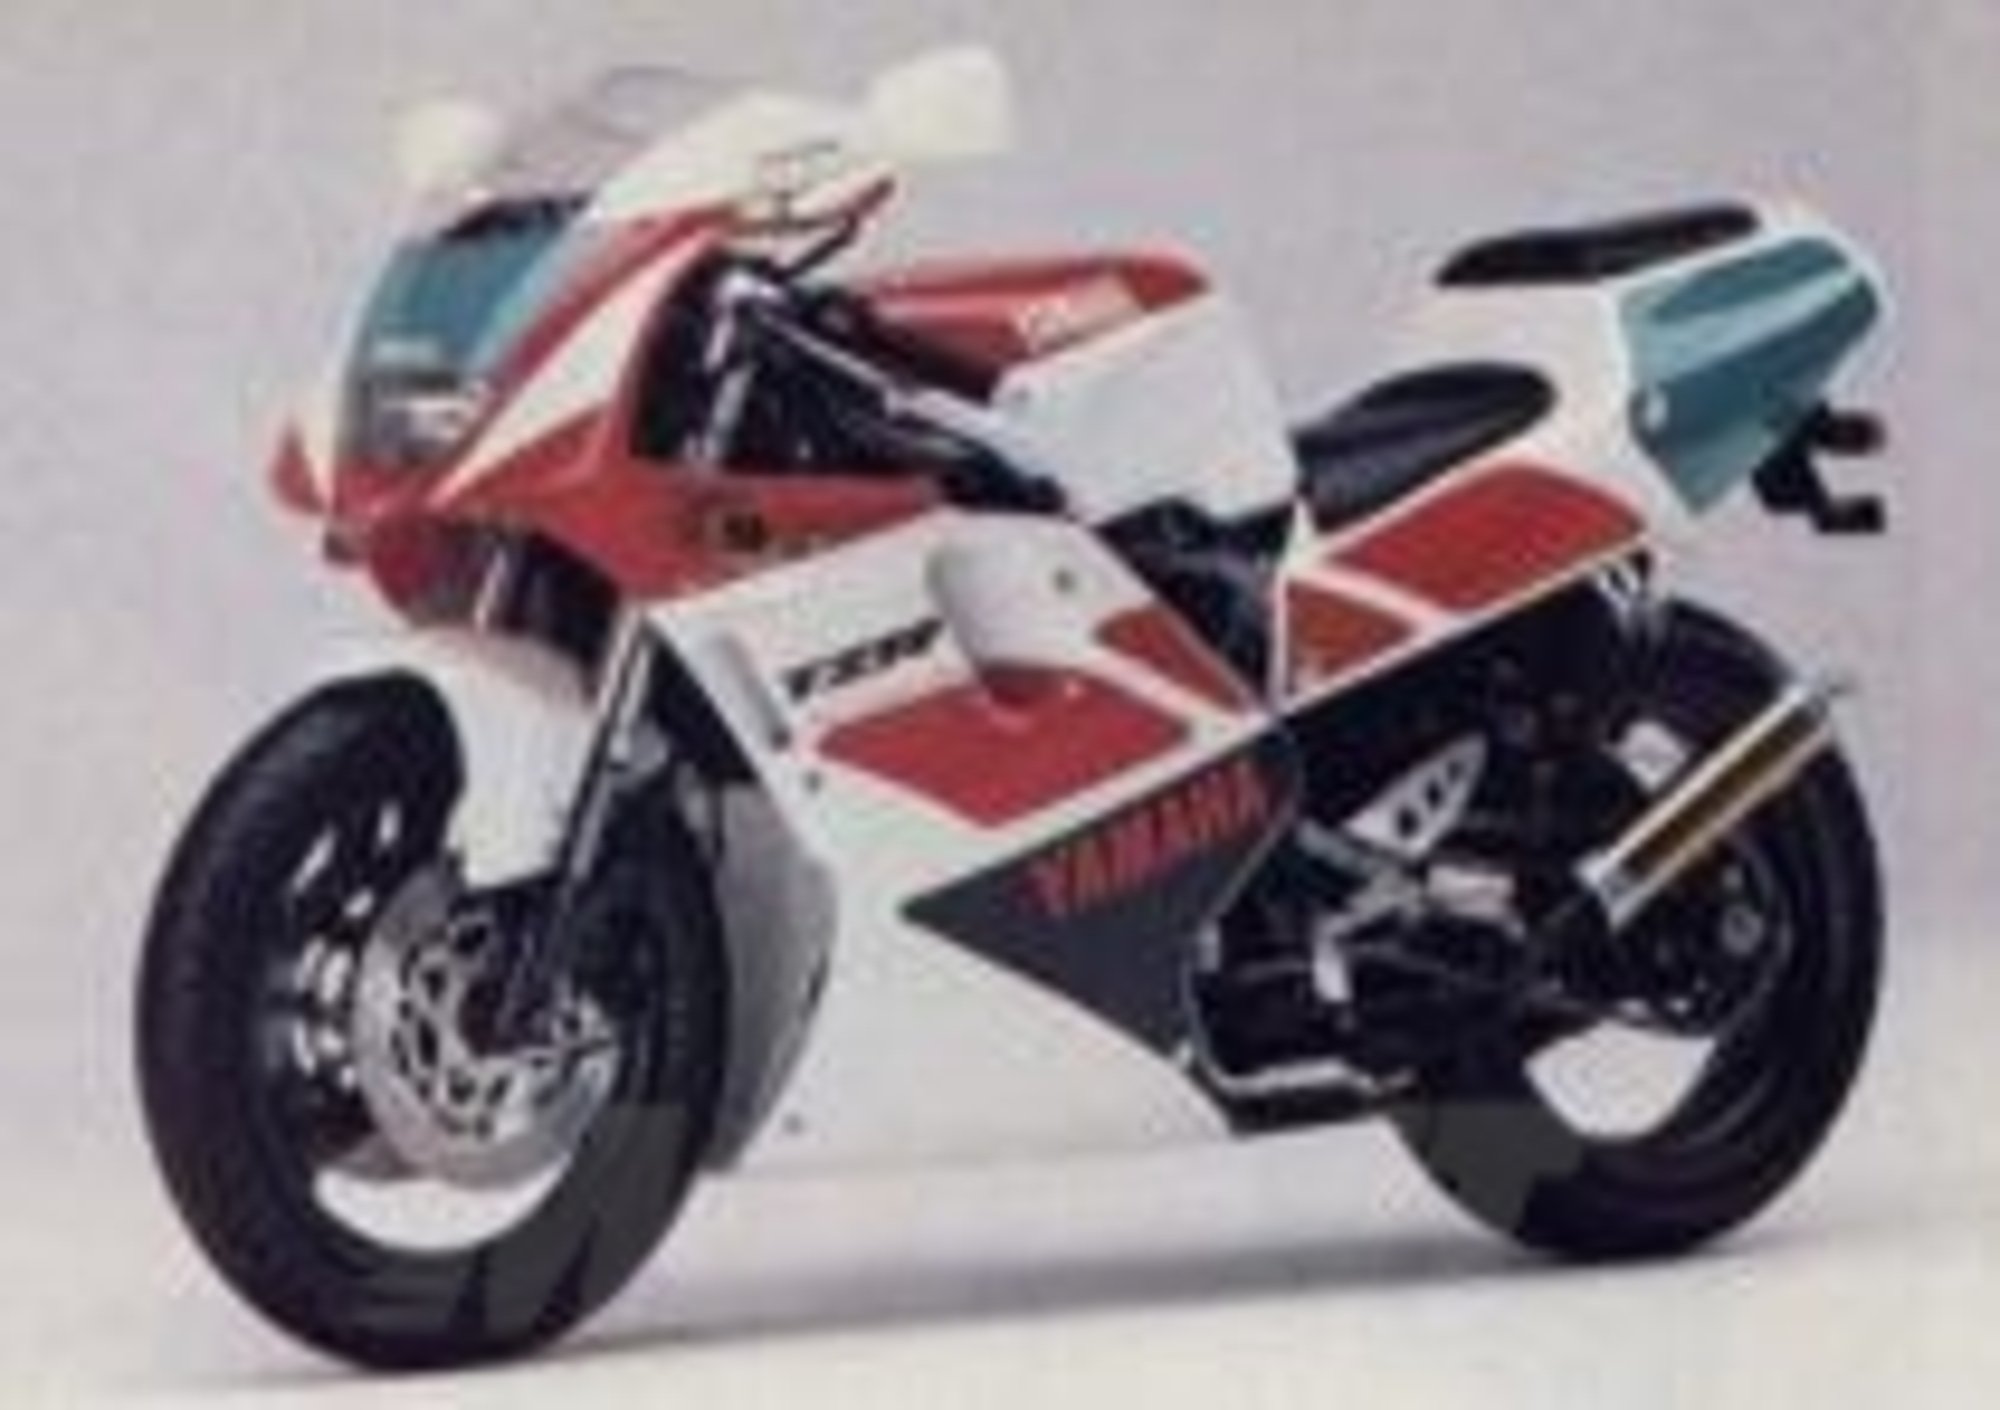 Le Belle e Possibili di Moto.it: Yamaha TZR 250